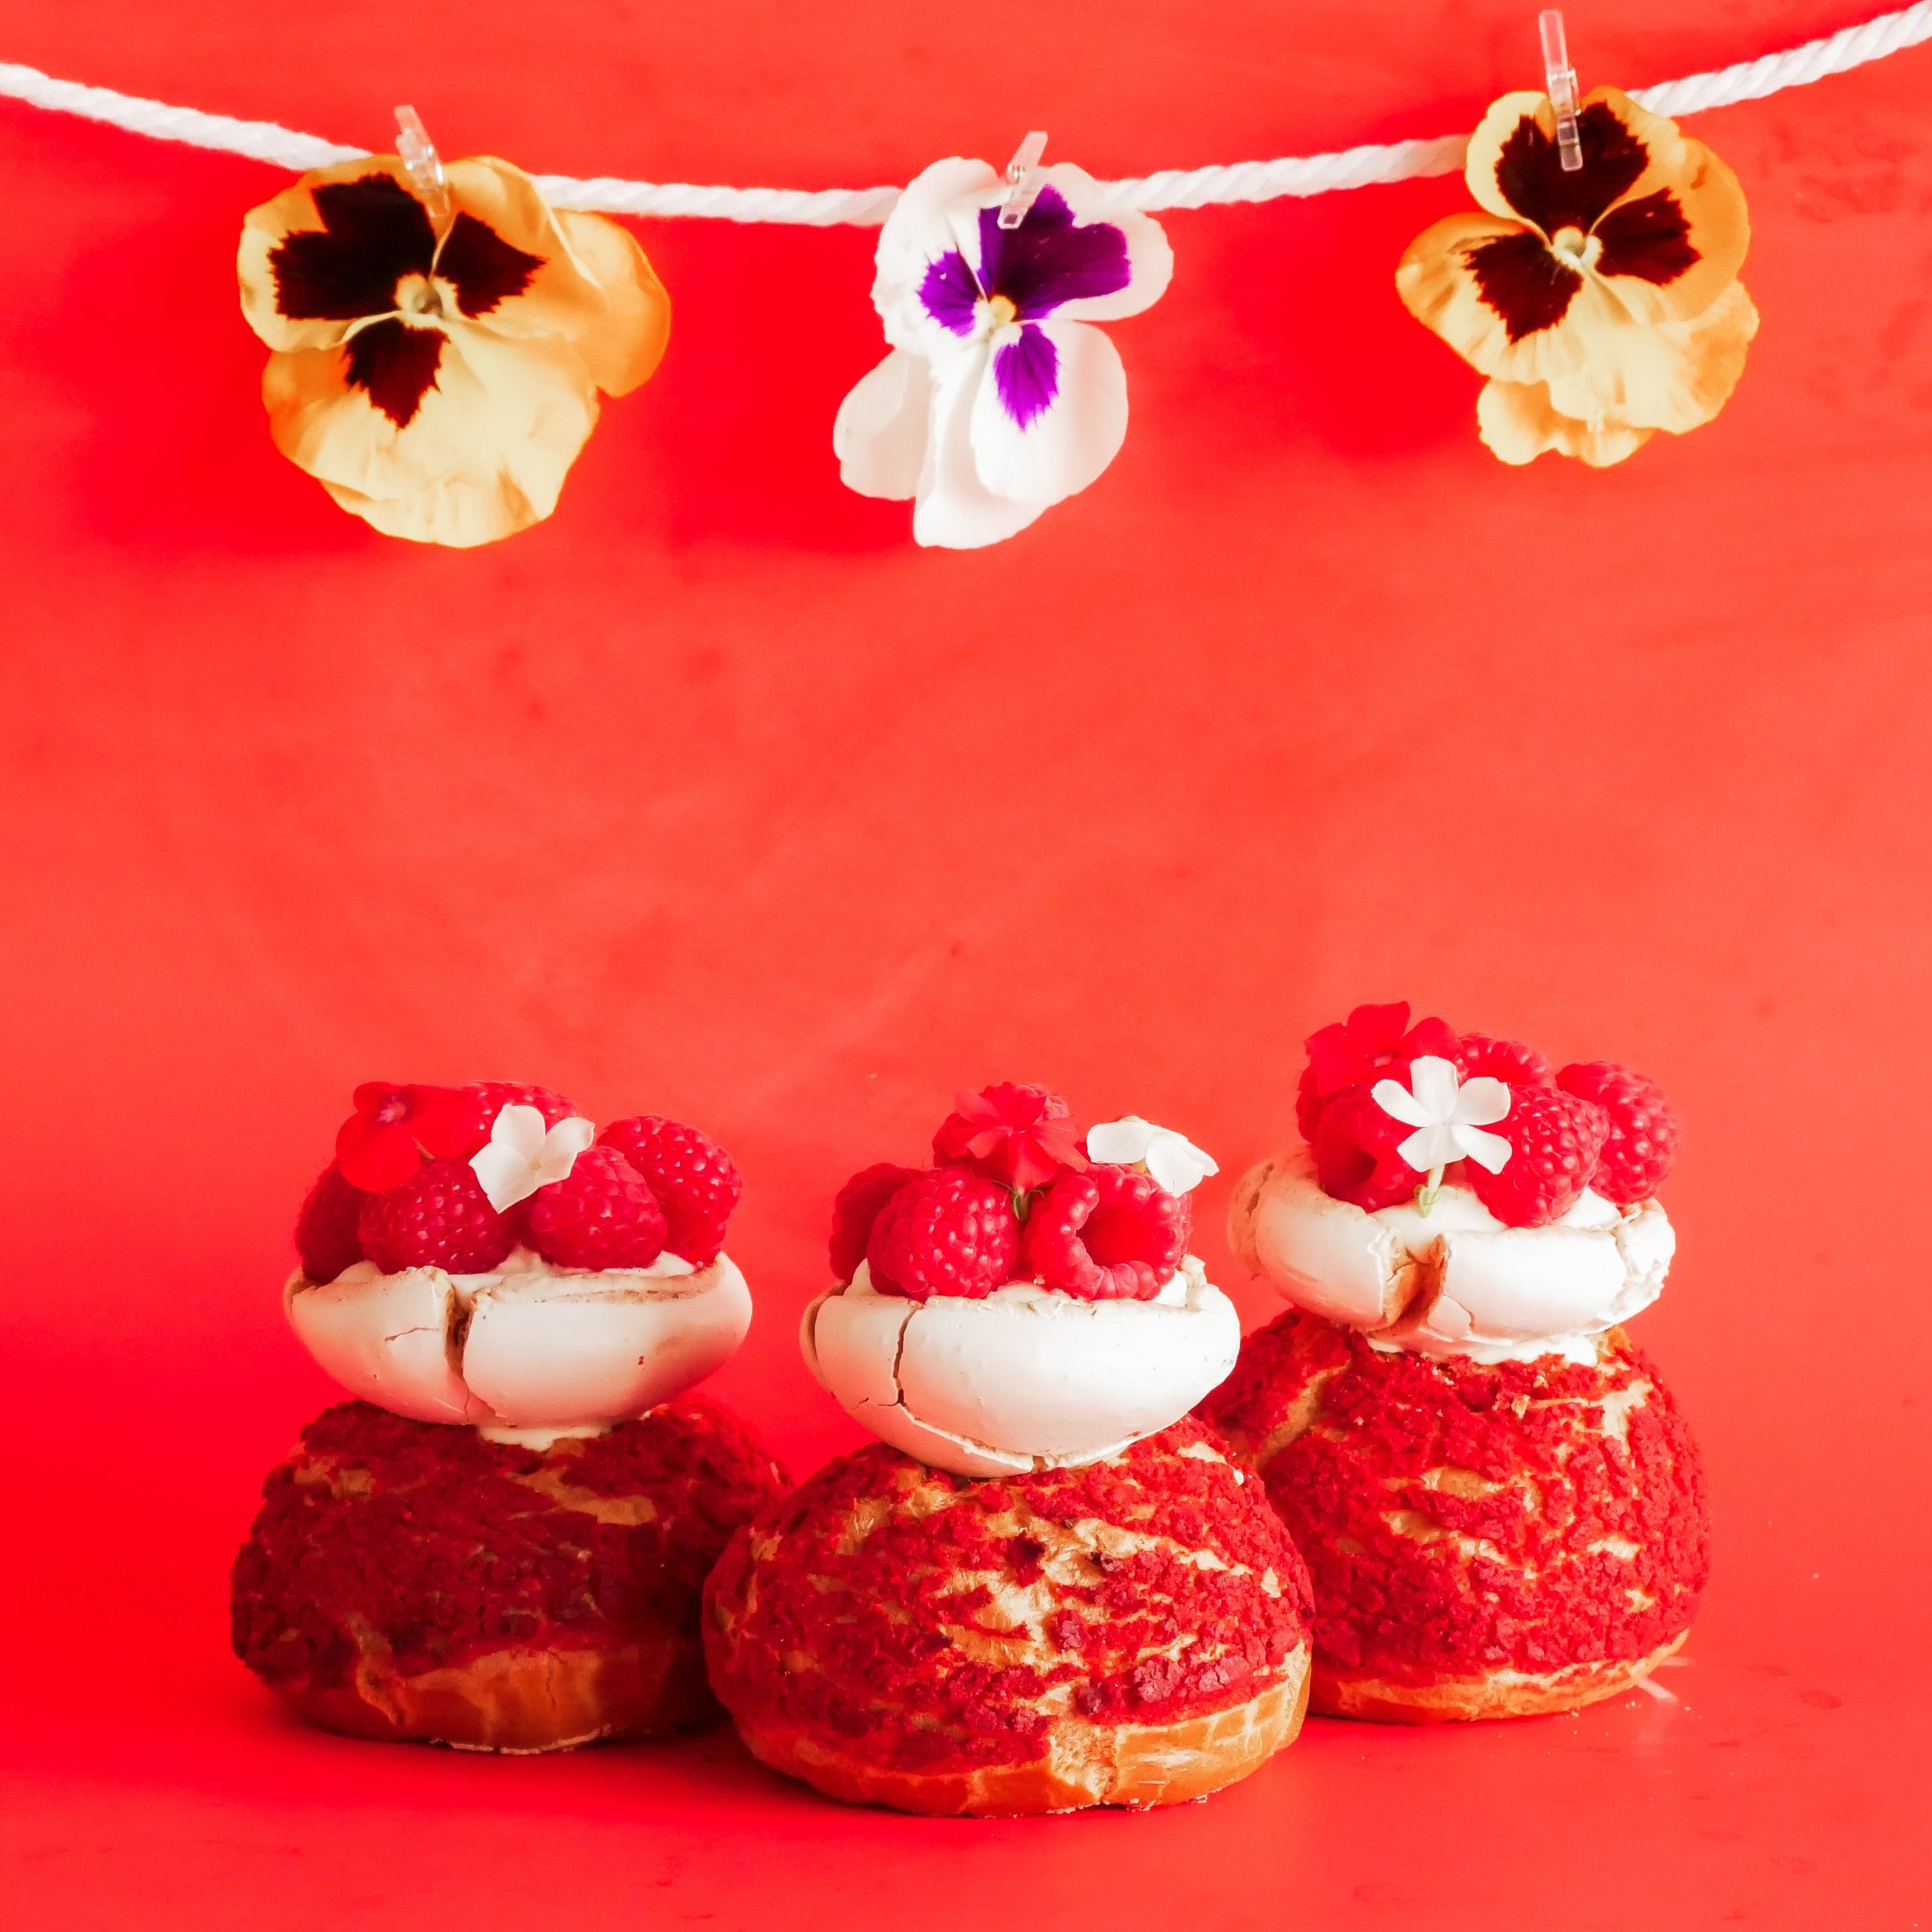 Pavlova cream puffs with raspberries and genmaicha